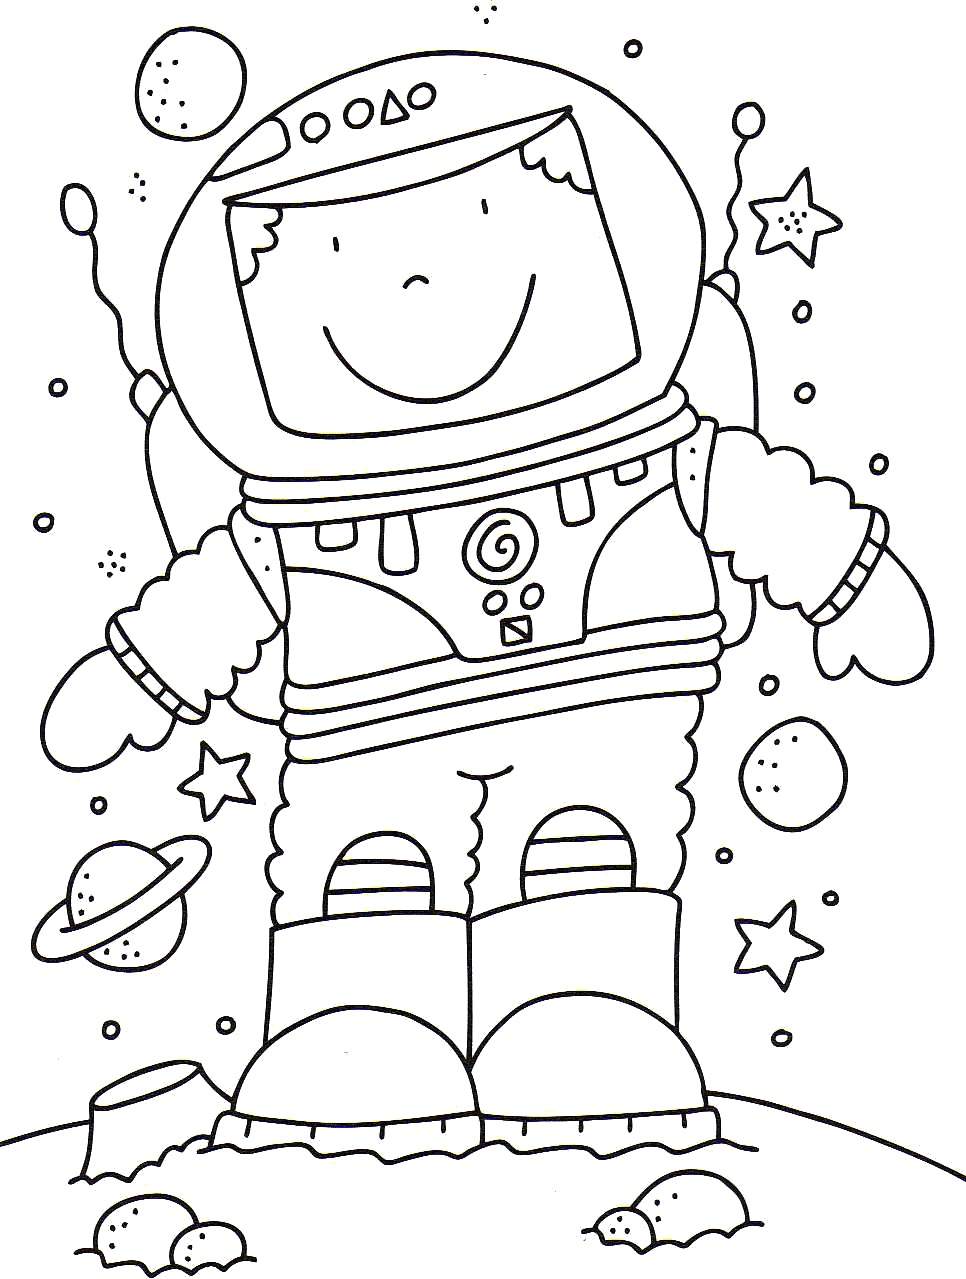 Раскраски к дню космонавтики для детей распечатать. Космос раскраска для детей. Раскраска. В космосе. Космические раскраски для детей. Детские раскраски космос.